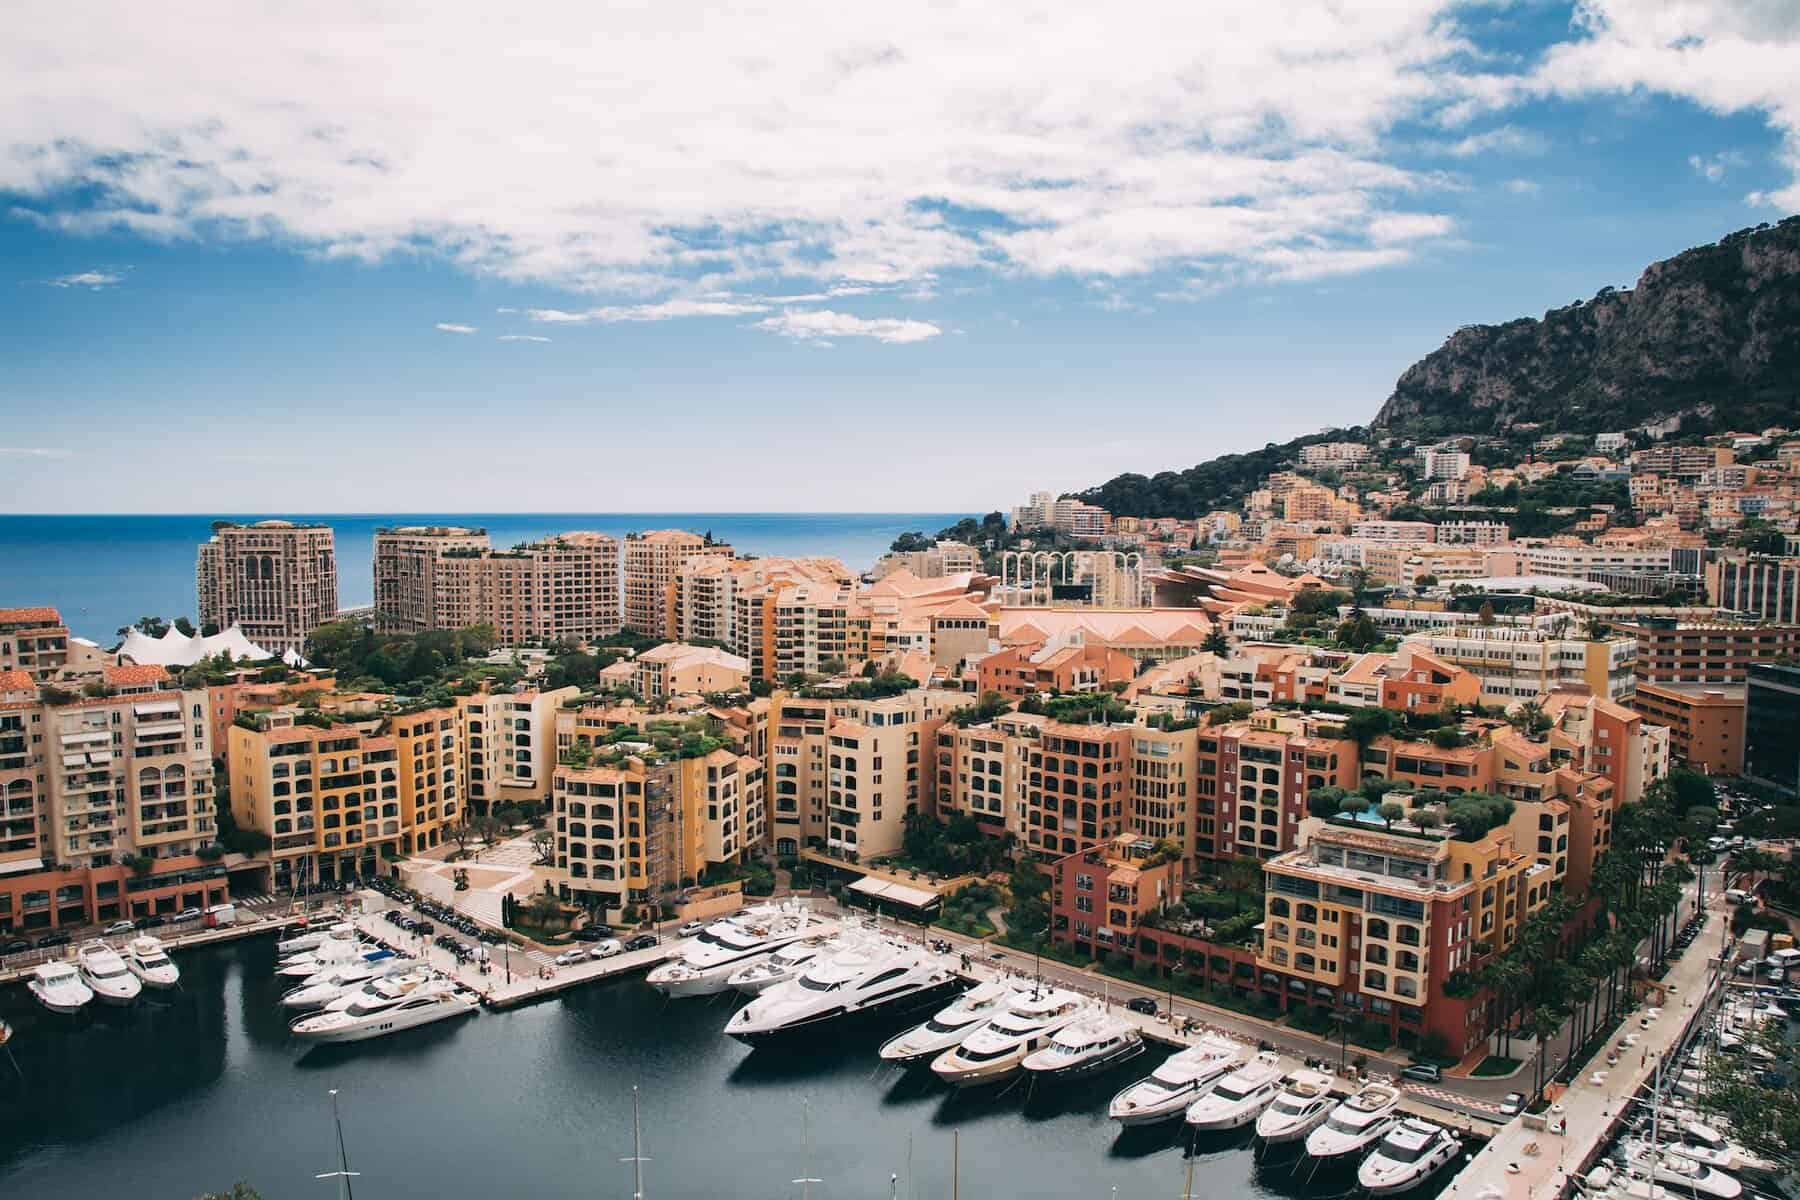 Old Monaco